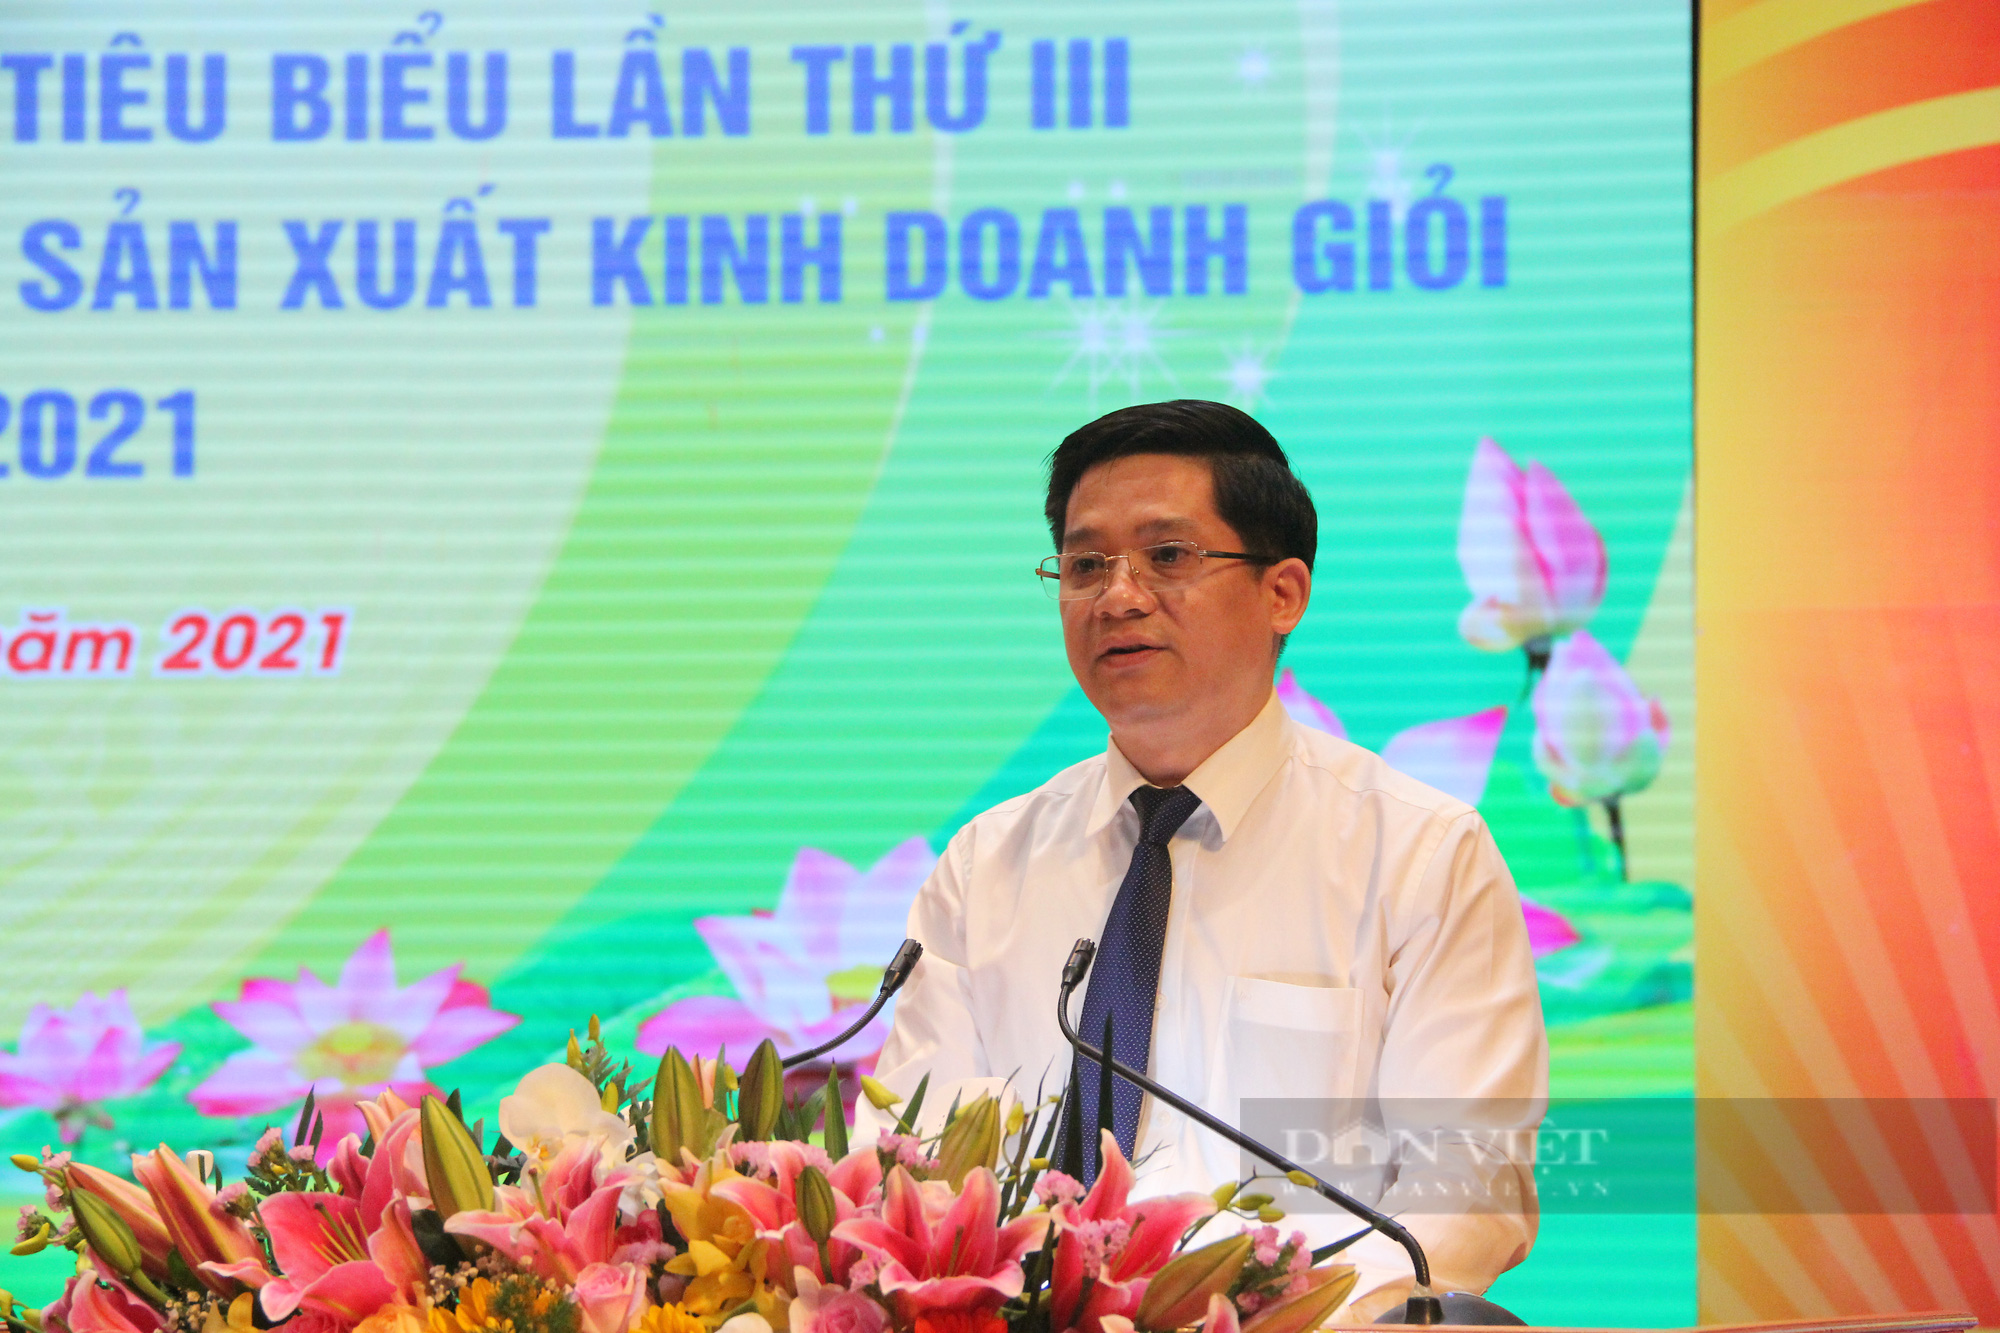 CLIP: Phó Chủ tịch T.Ư Hội NDVN Phạm Tiến Nam tham dự Hội nghị tổng kết sản xuất, kinh doanh giỏi tỉnh Bắc Giang - Ảnh 2.